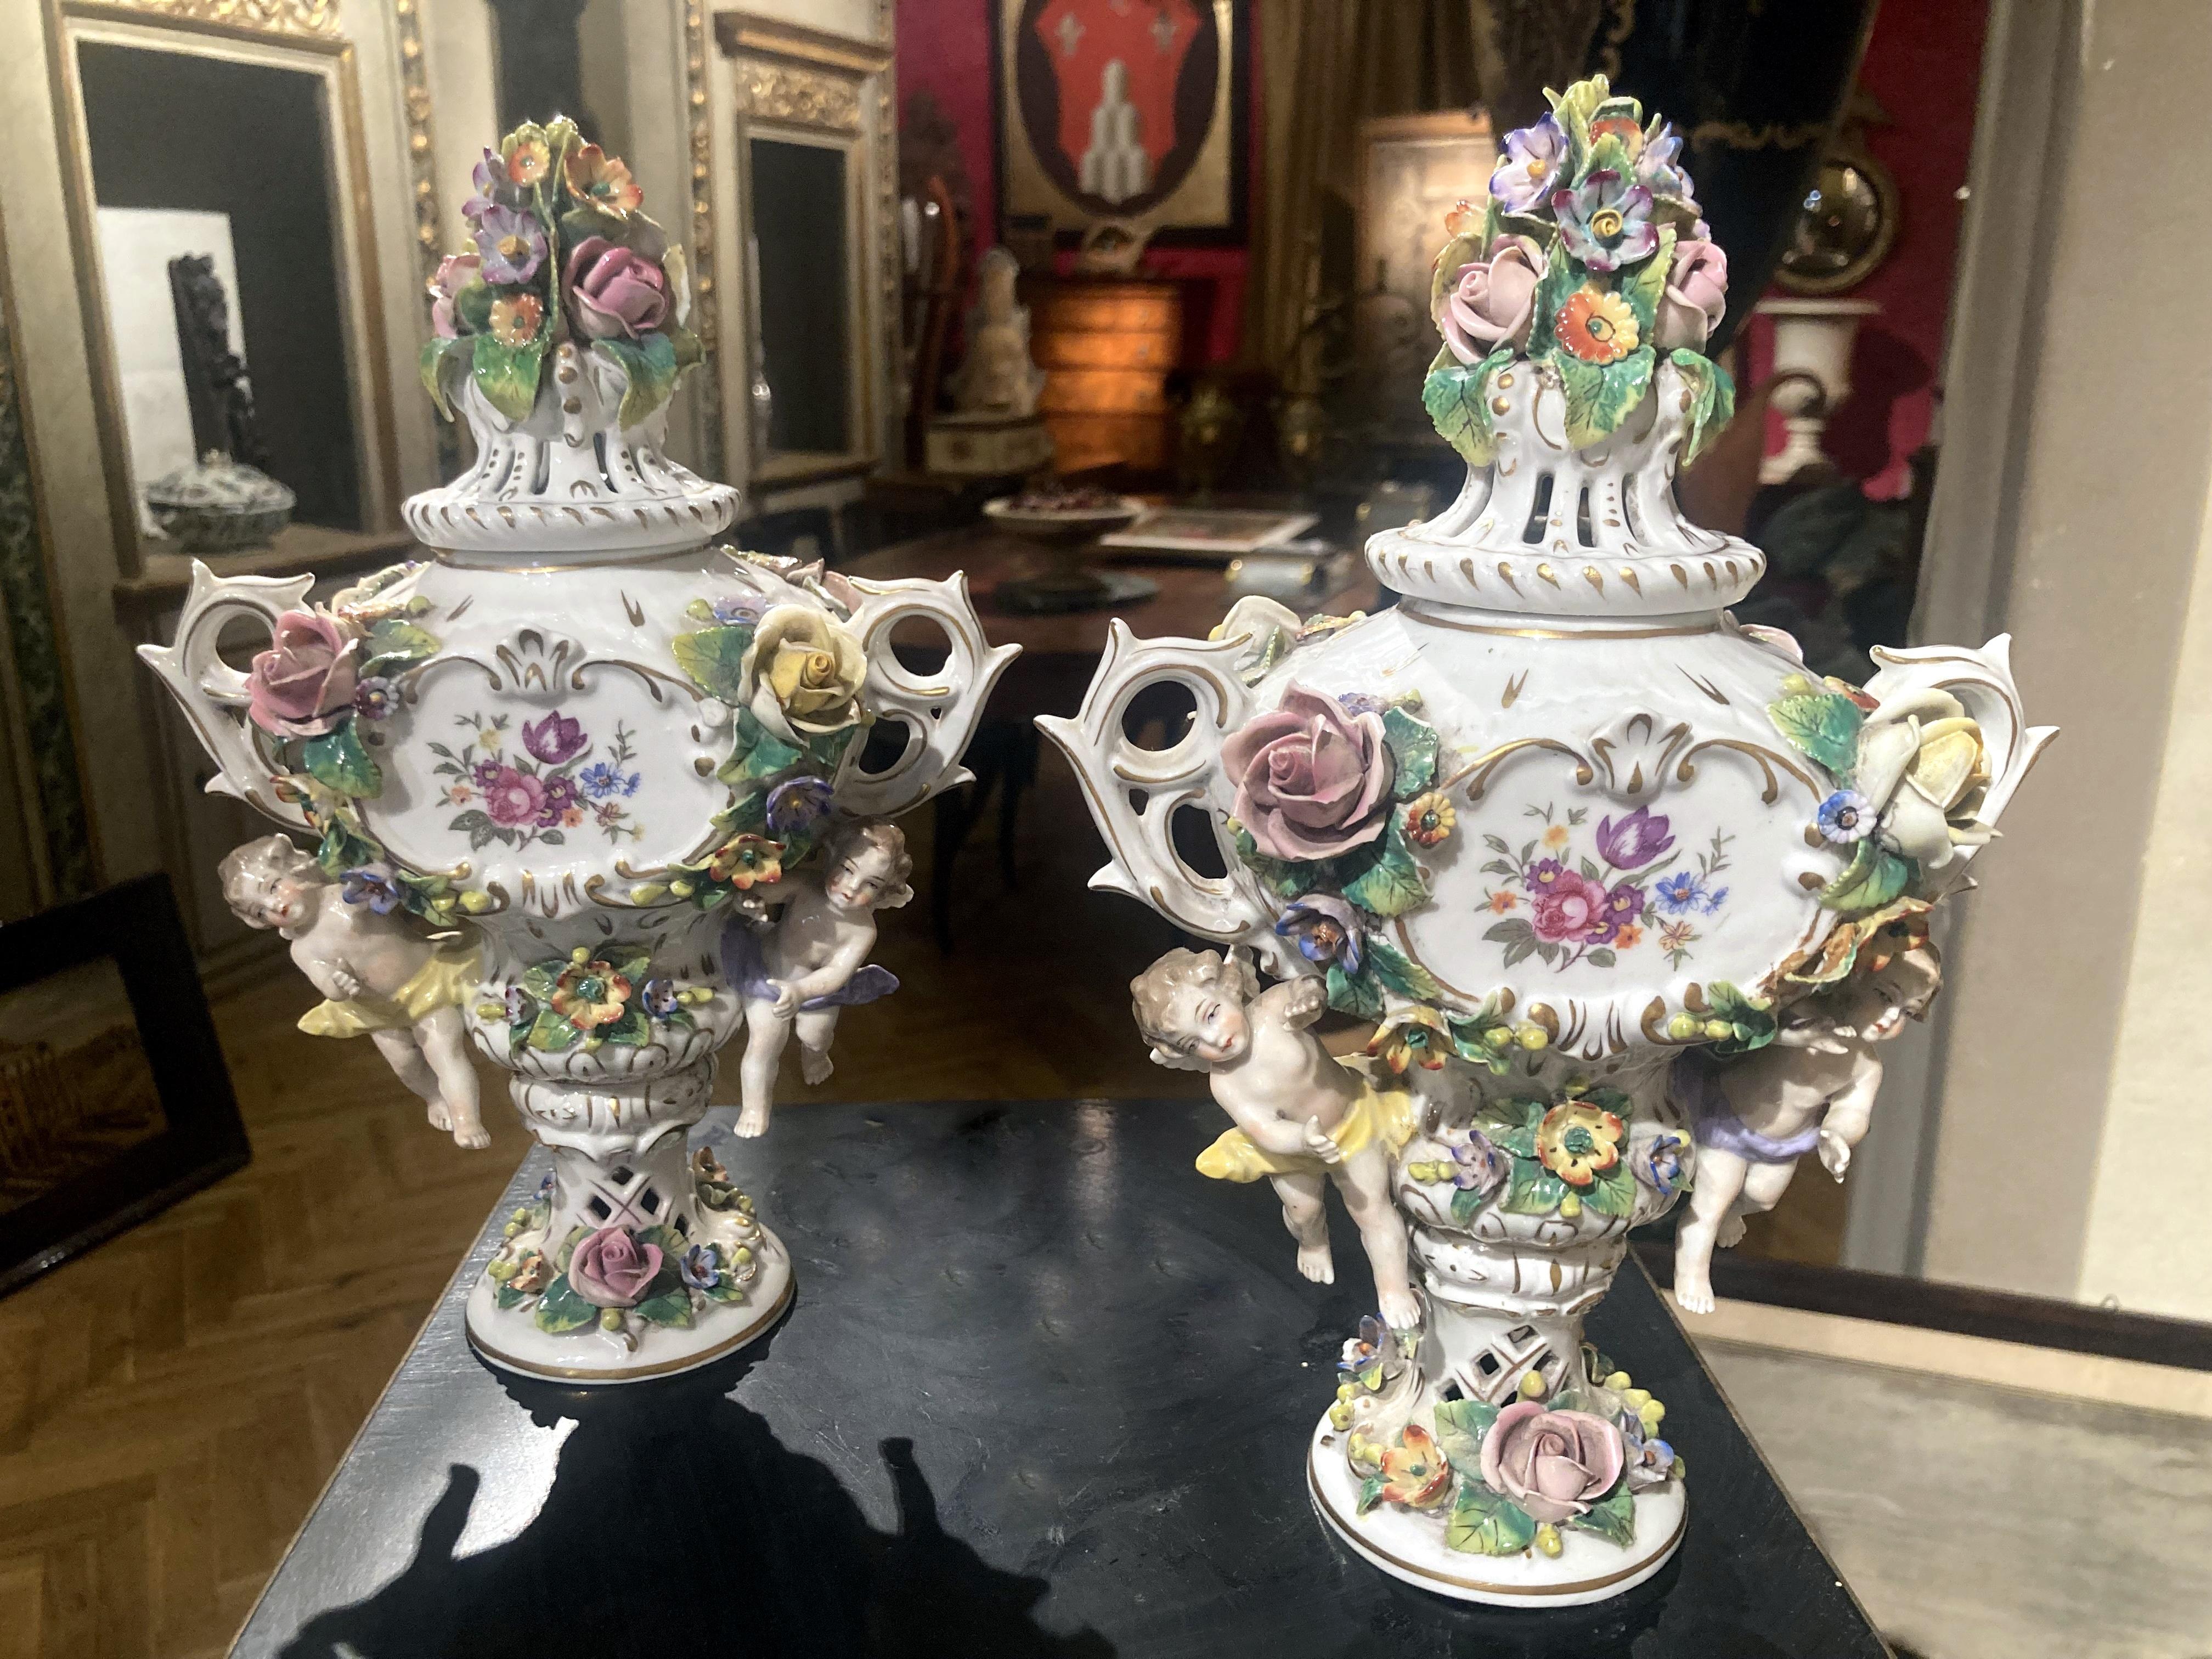 Paire exquise de brûleurs d'encens en porcelaine polychrome de style Capodimonte du début du XIXe siècle, en forme d'urnes, avec deux poignées et des couvercles percés. 
Le corps est centré de part et d'autre par une guirlande florale peinte de